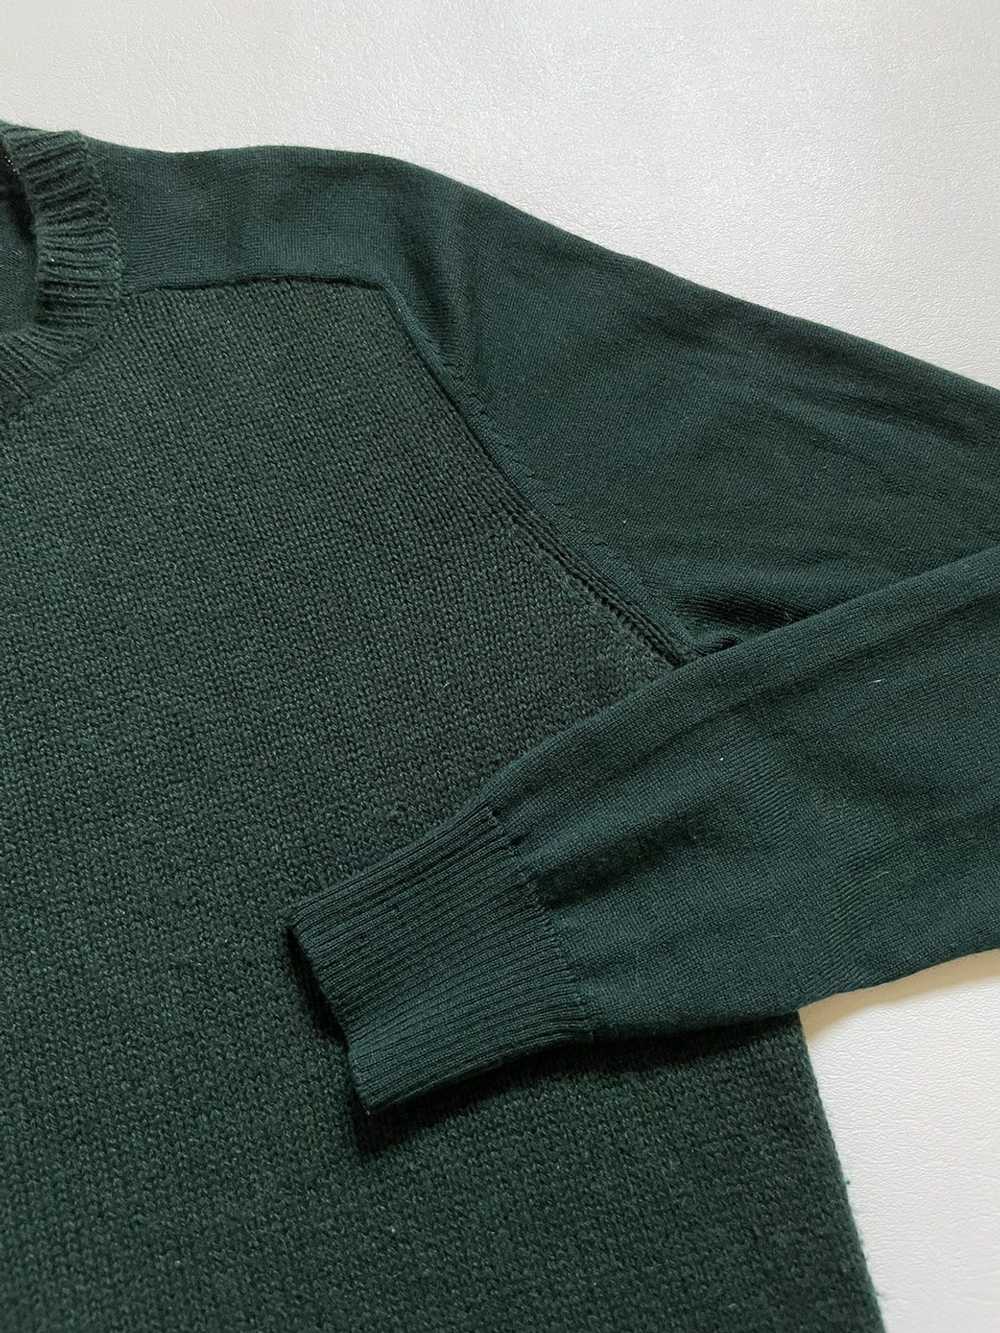 Designer × Marni × Streetwear Marni sweater - image 4